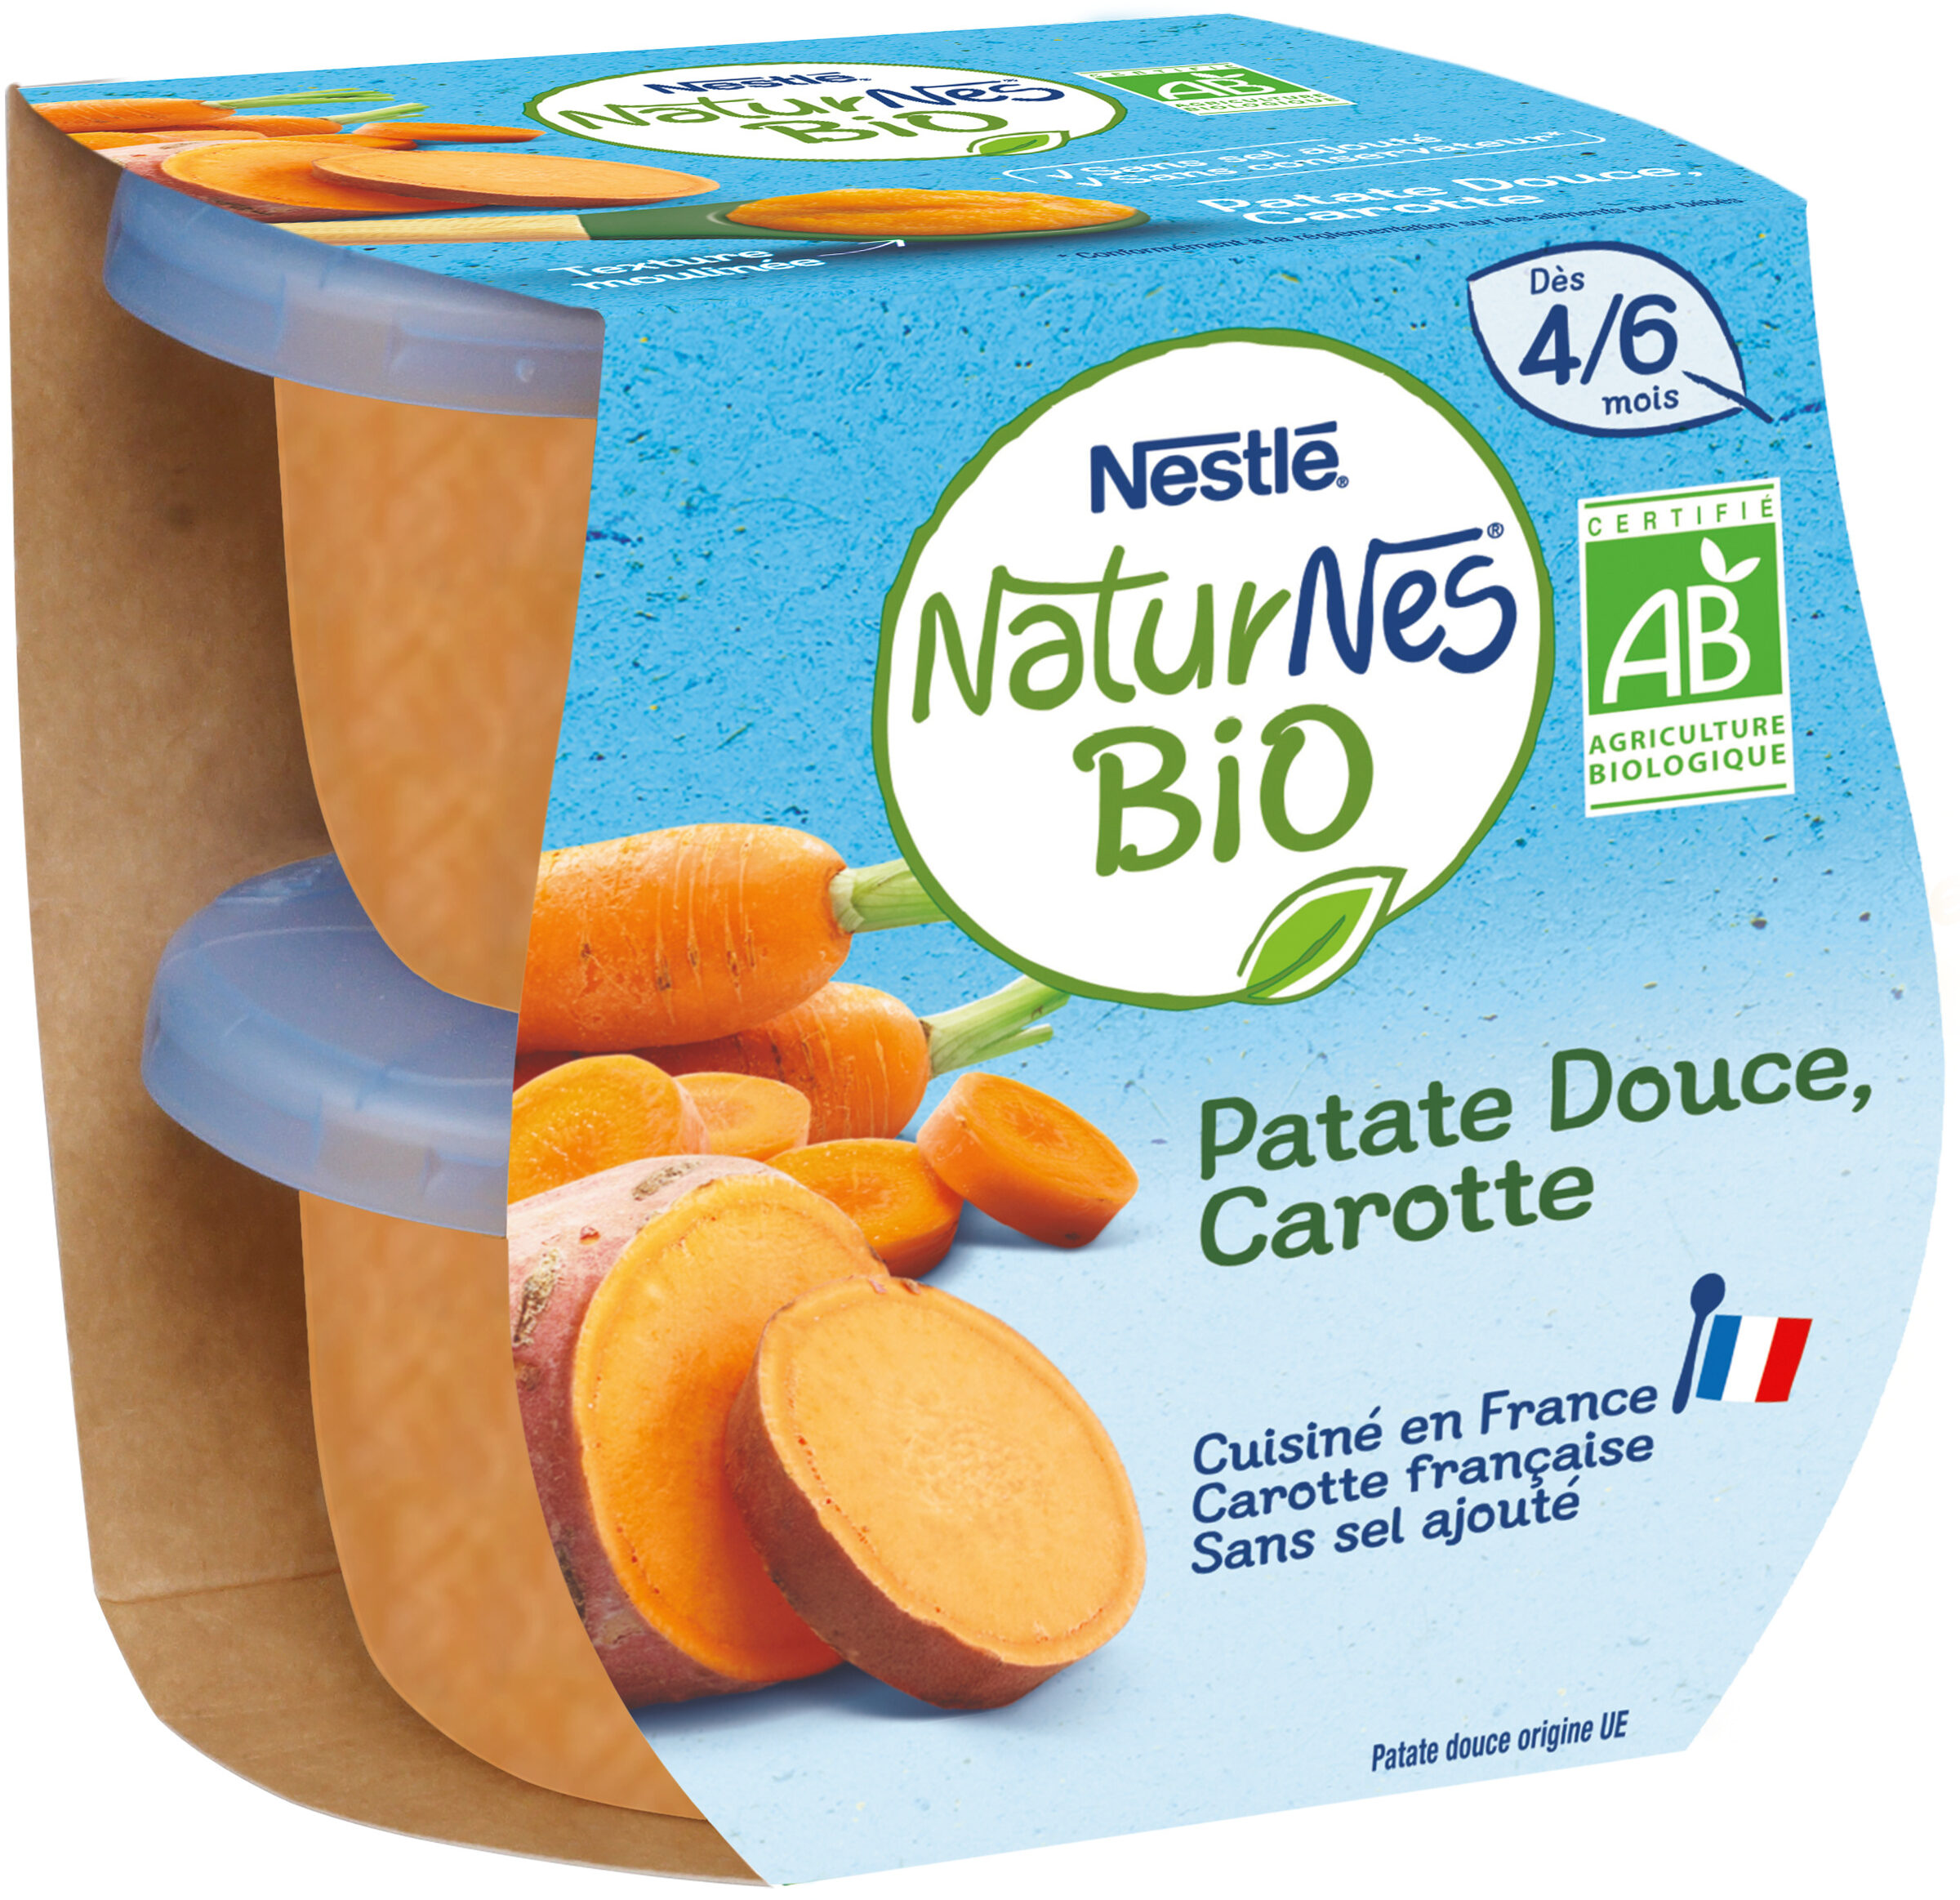 NESTLE NATURNES BIO Petits Pots Bébé Patat Douc Carot2x130g-Dès4/6mois - Produkt - fr